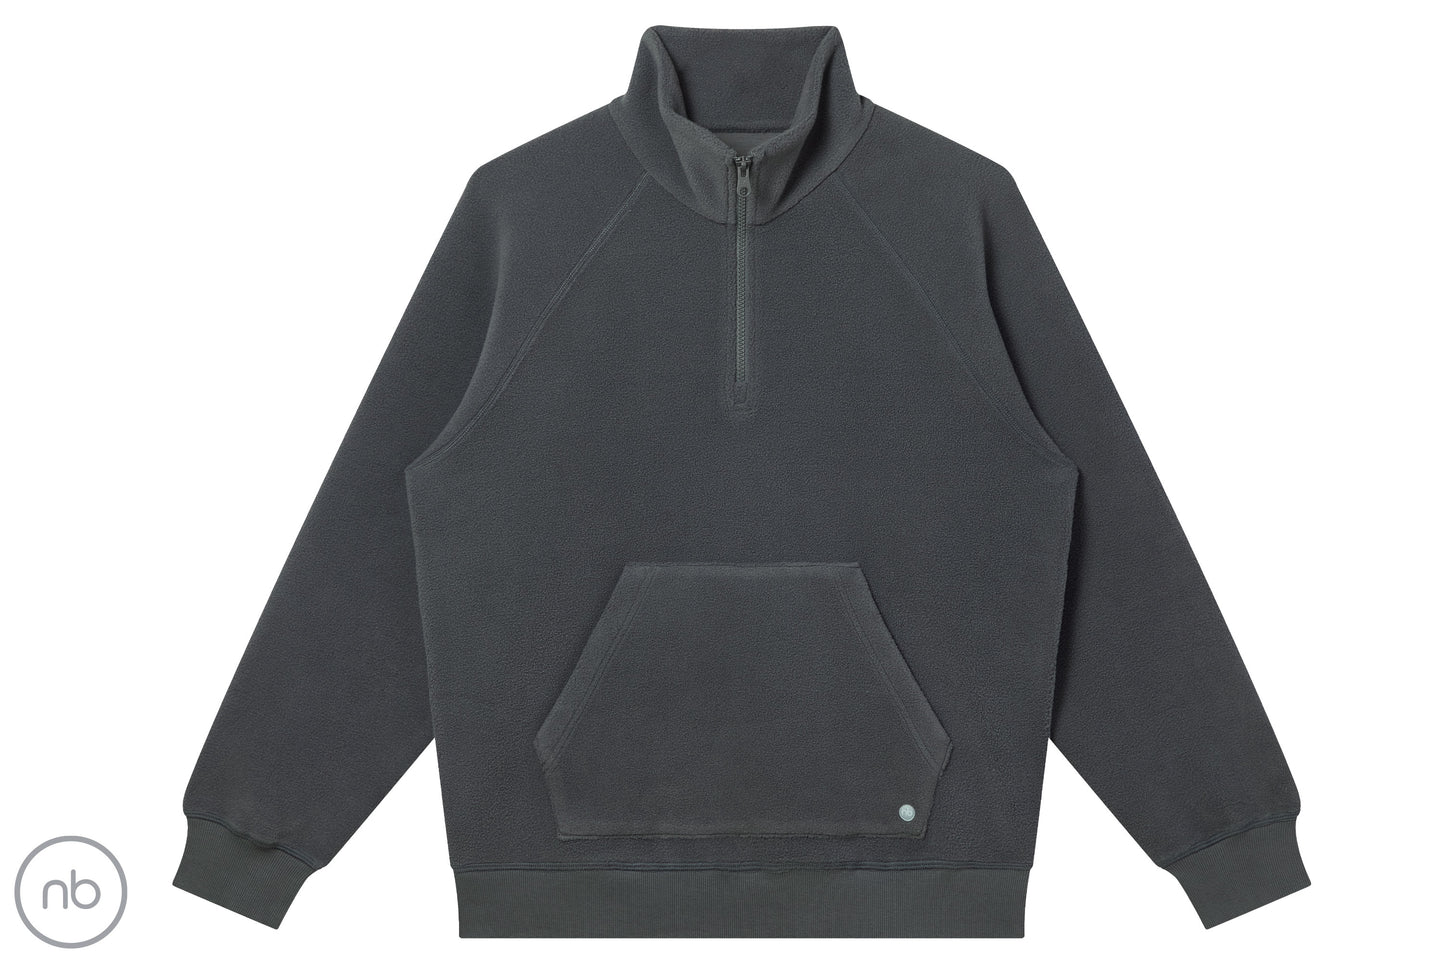 Basics Unisex Half Zip Fleece Top (Bamboo Cotton) - Dark Charcoal